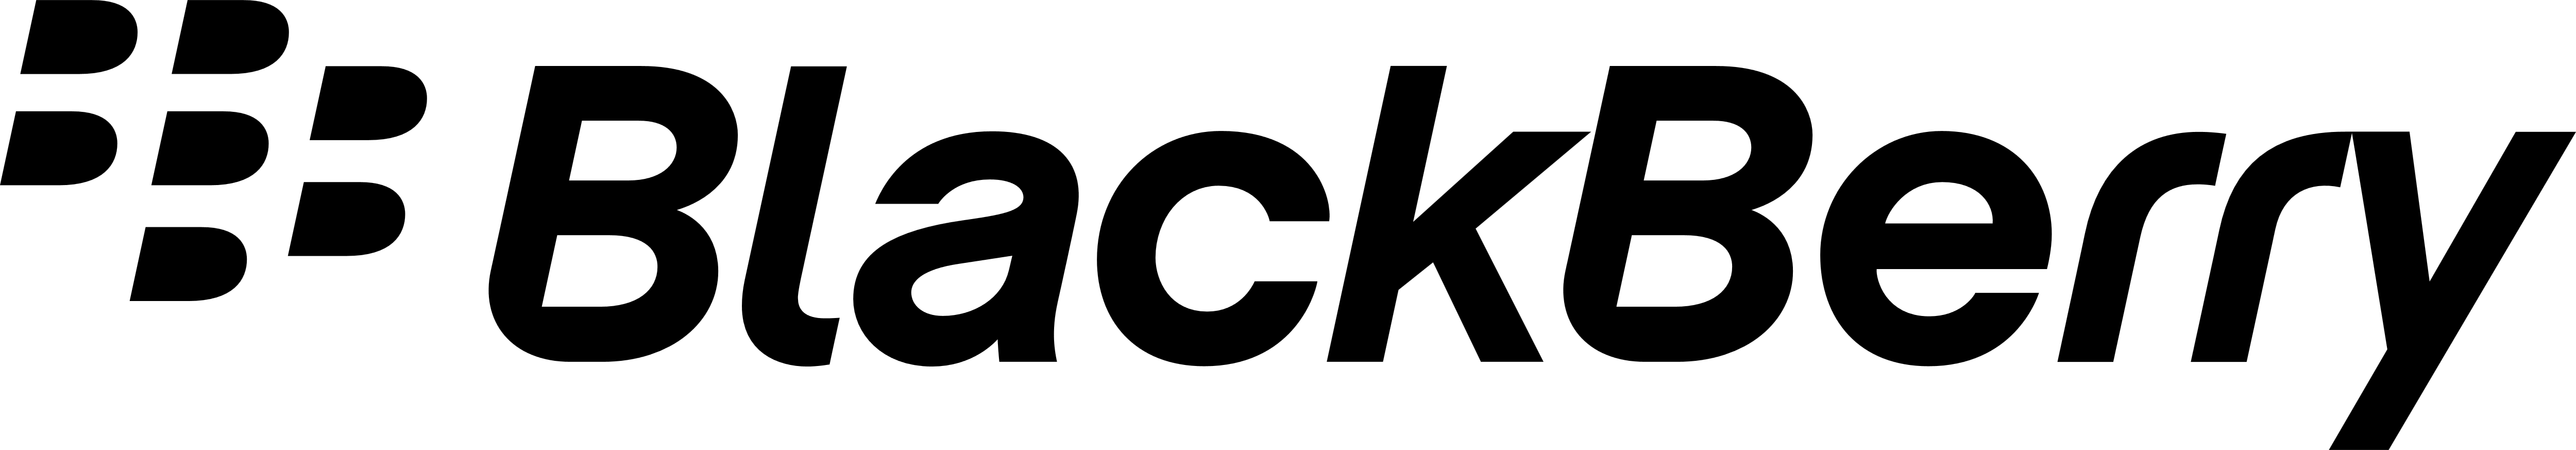 Blackberry Logo】| Blackberr